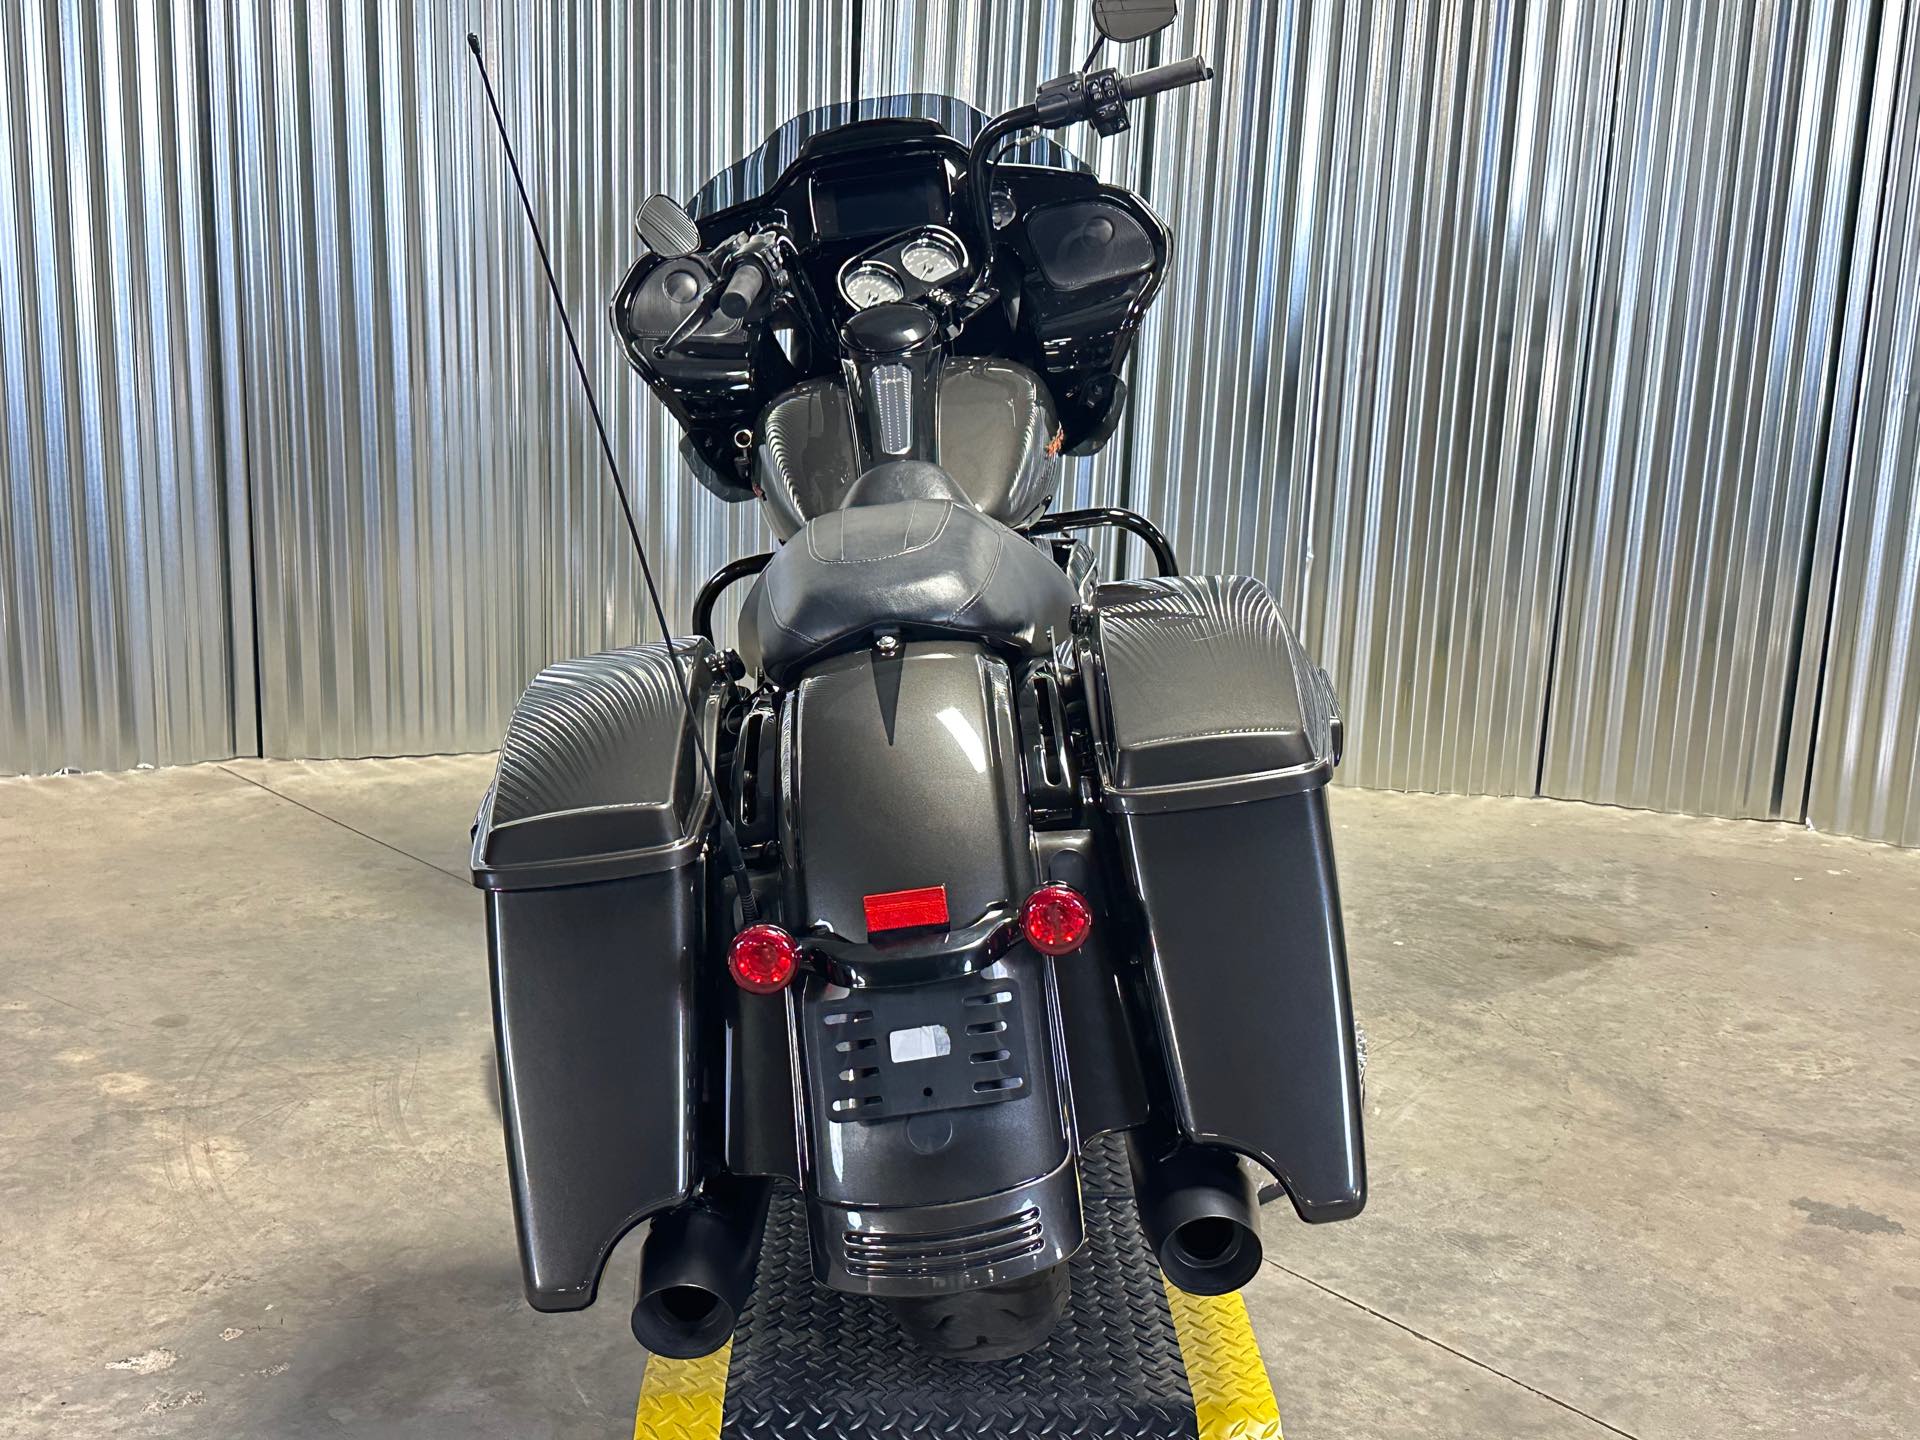 2019 Harley-Davidson Road Glide Special at Elk River Harley-Davidson